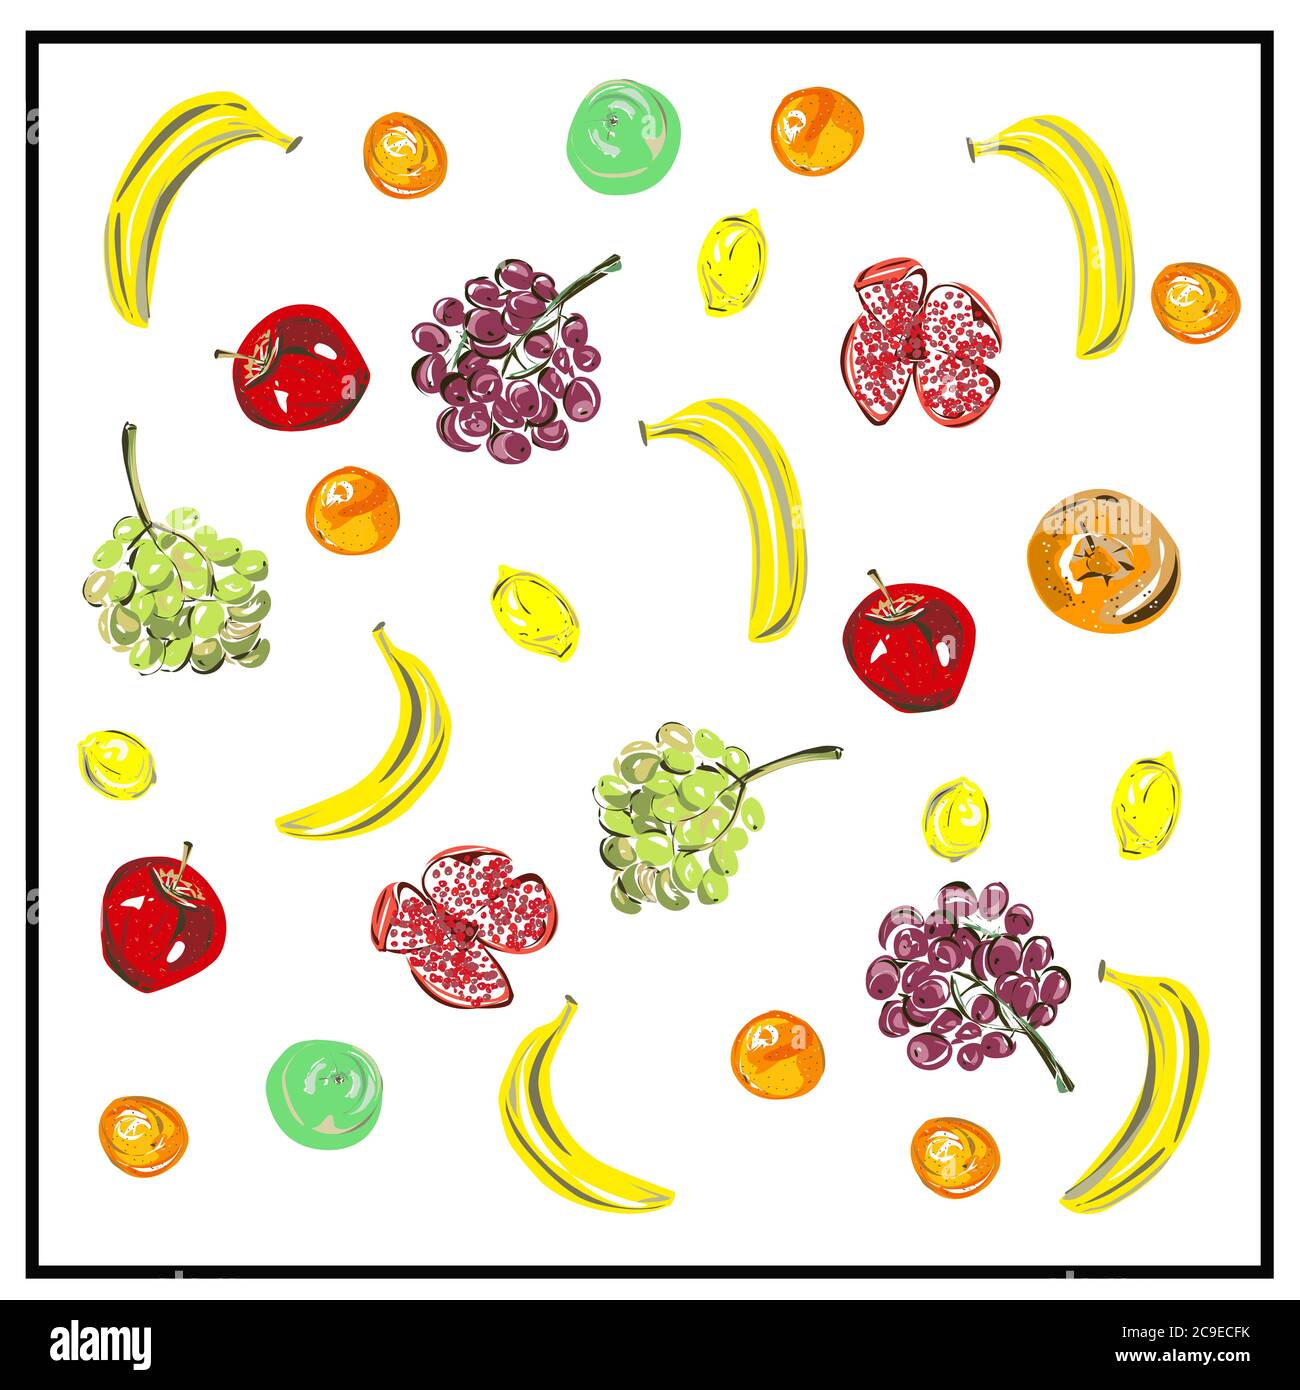 Muster, eine Reihe von frischen Früchten. Isoliertes Bild von Früchten auf weißem Hintergrund. Stock Vektor